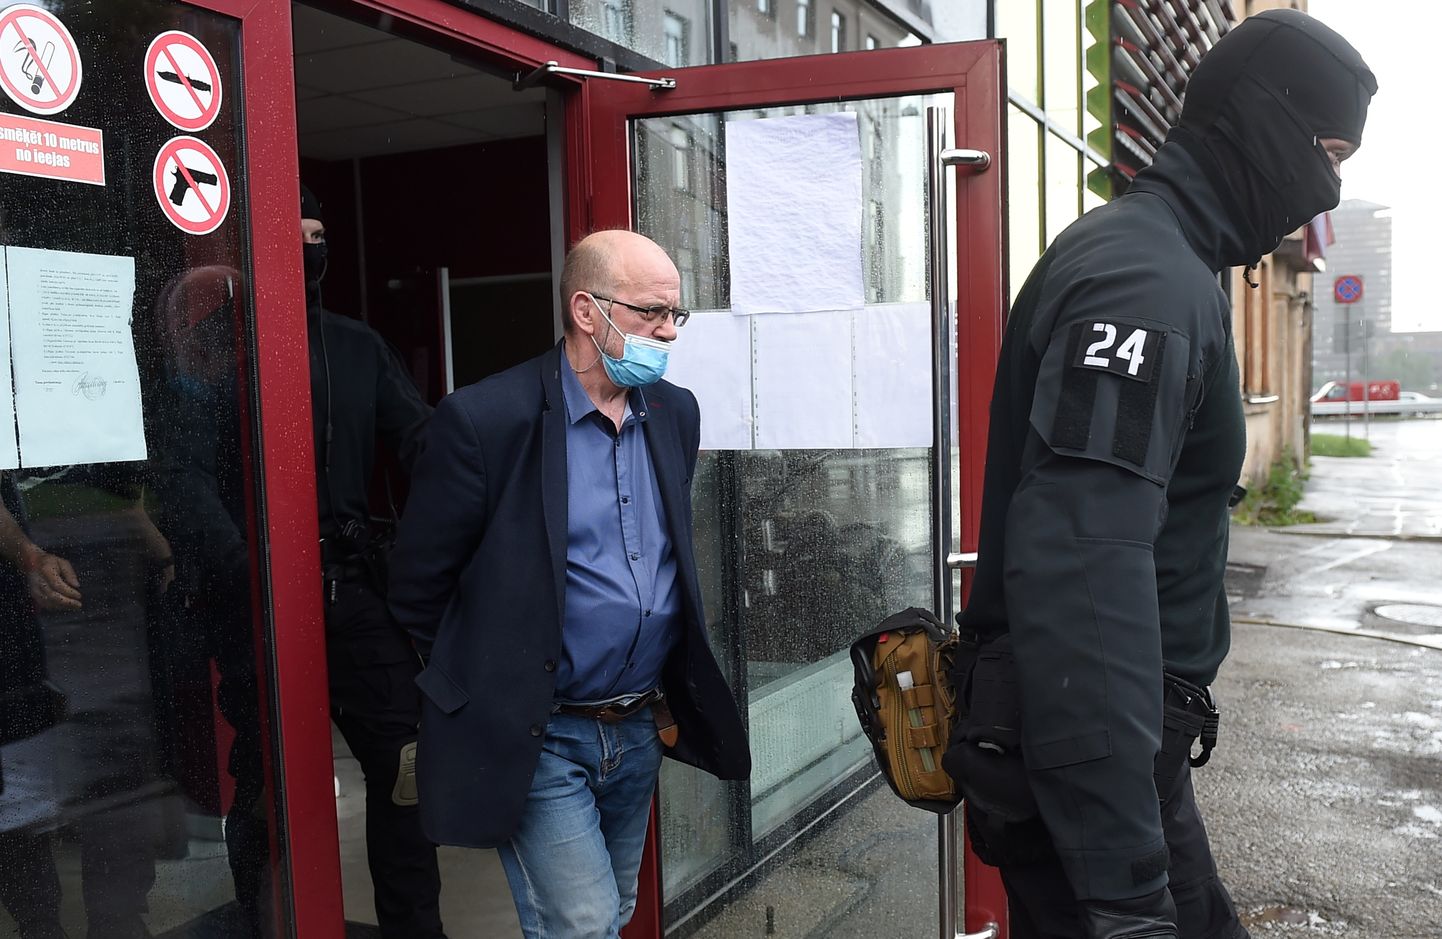 Spiegošanā Krievijas labā vainotais Saeimas deputāts Jānis Ādamsons tiek konvojēts pēc tiesas sēdes Rīgas pilsētas Vidzemes priekšpilsētas tiesā, kur viņam piemēroja drošības līdzekli - apcietinājumu.